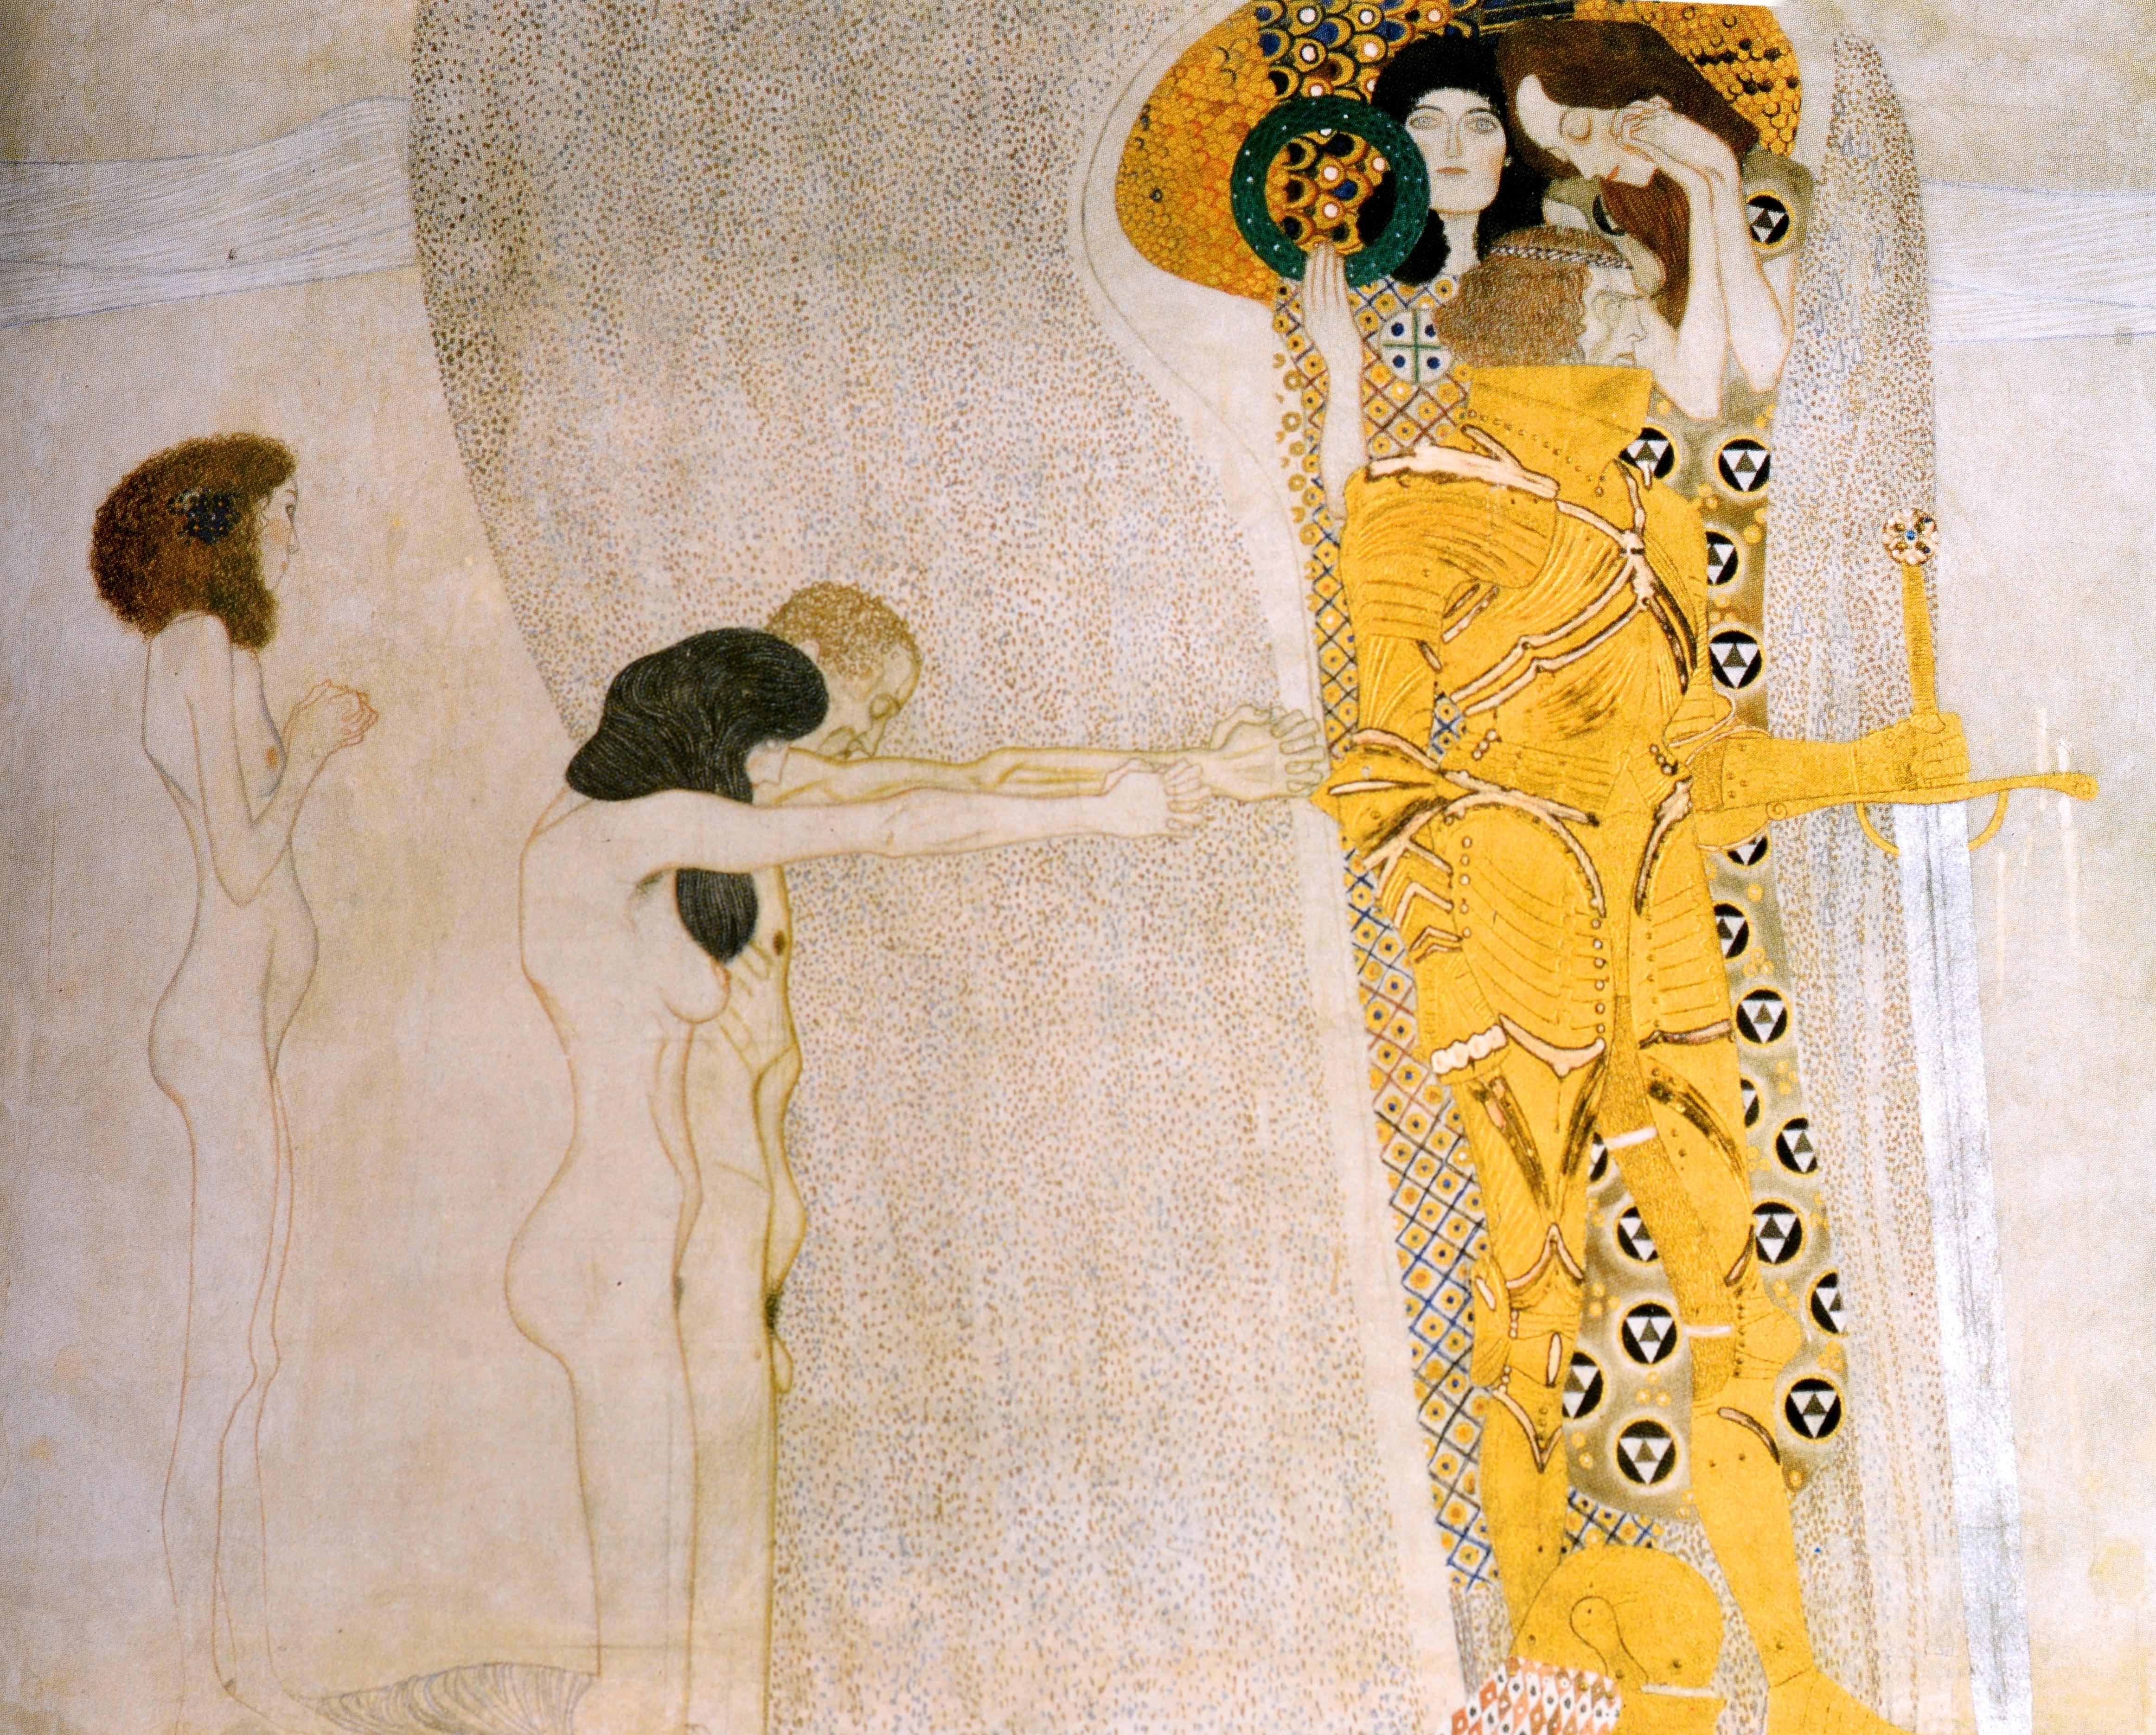 Art in Vienna 1898-1918 Klimt, Kokoschka, Schiele and Their Contemporaries In Excellent Condition For Sale In valatie, NY